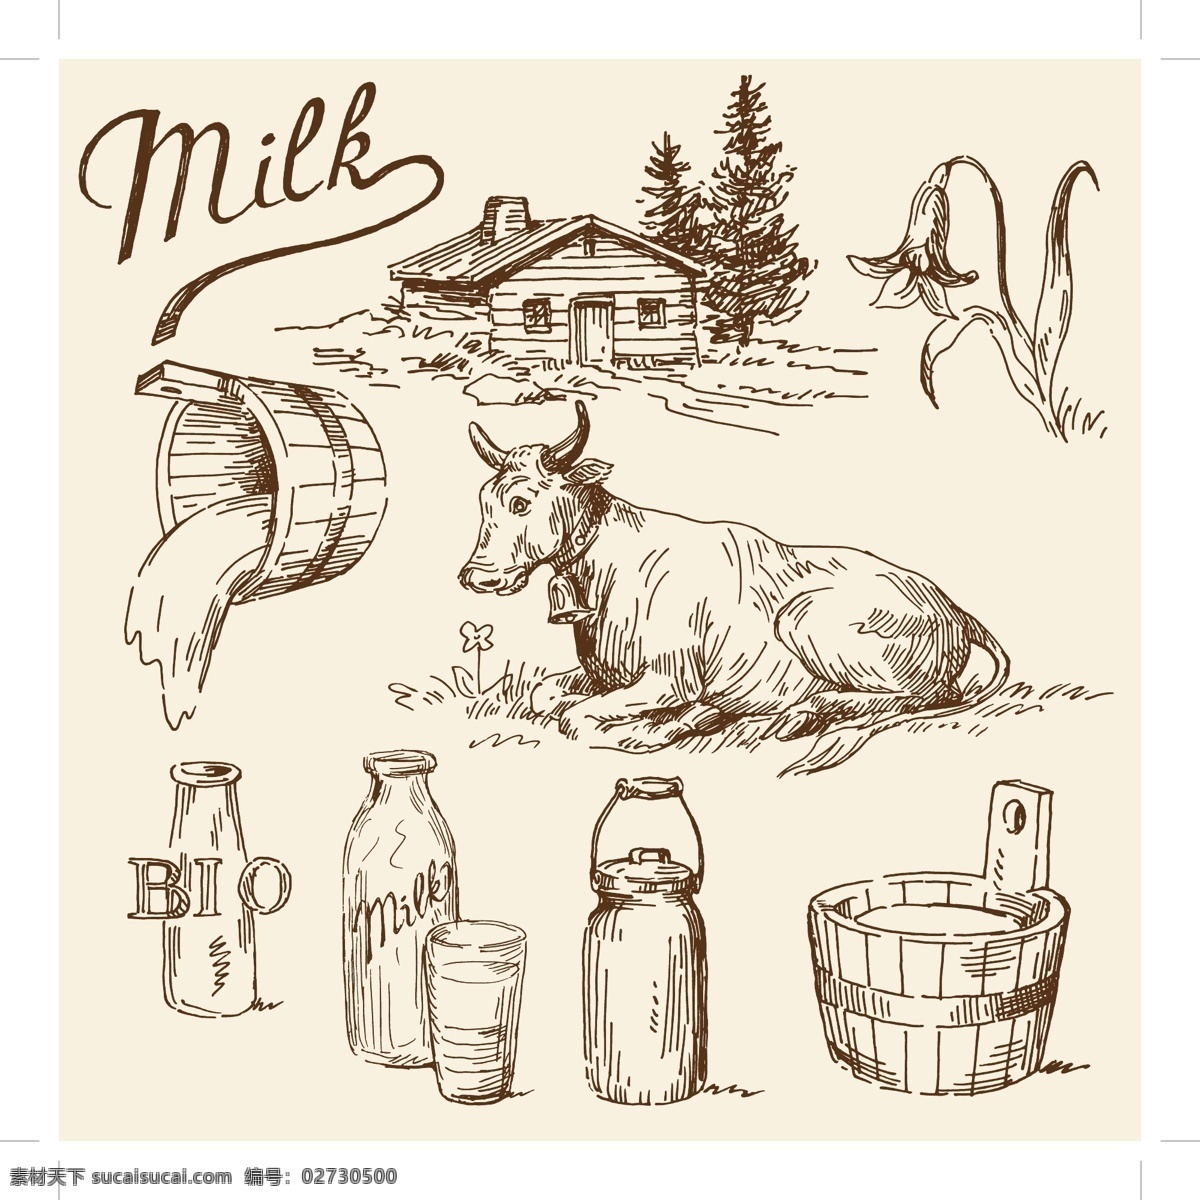 牛奶 相关 应用 矢量 杯子 木桶 牧场 奶花 奶牛 牛奶瓶 农场 瓶子 阳光 倒牛奶 矢量图 其他矢量图